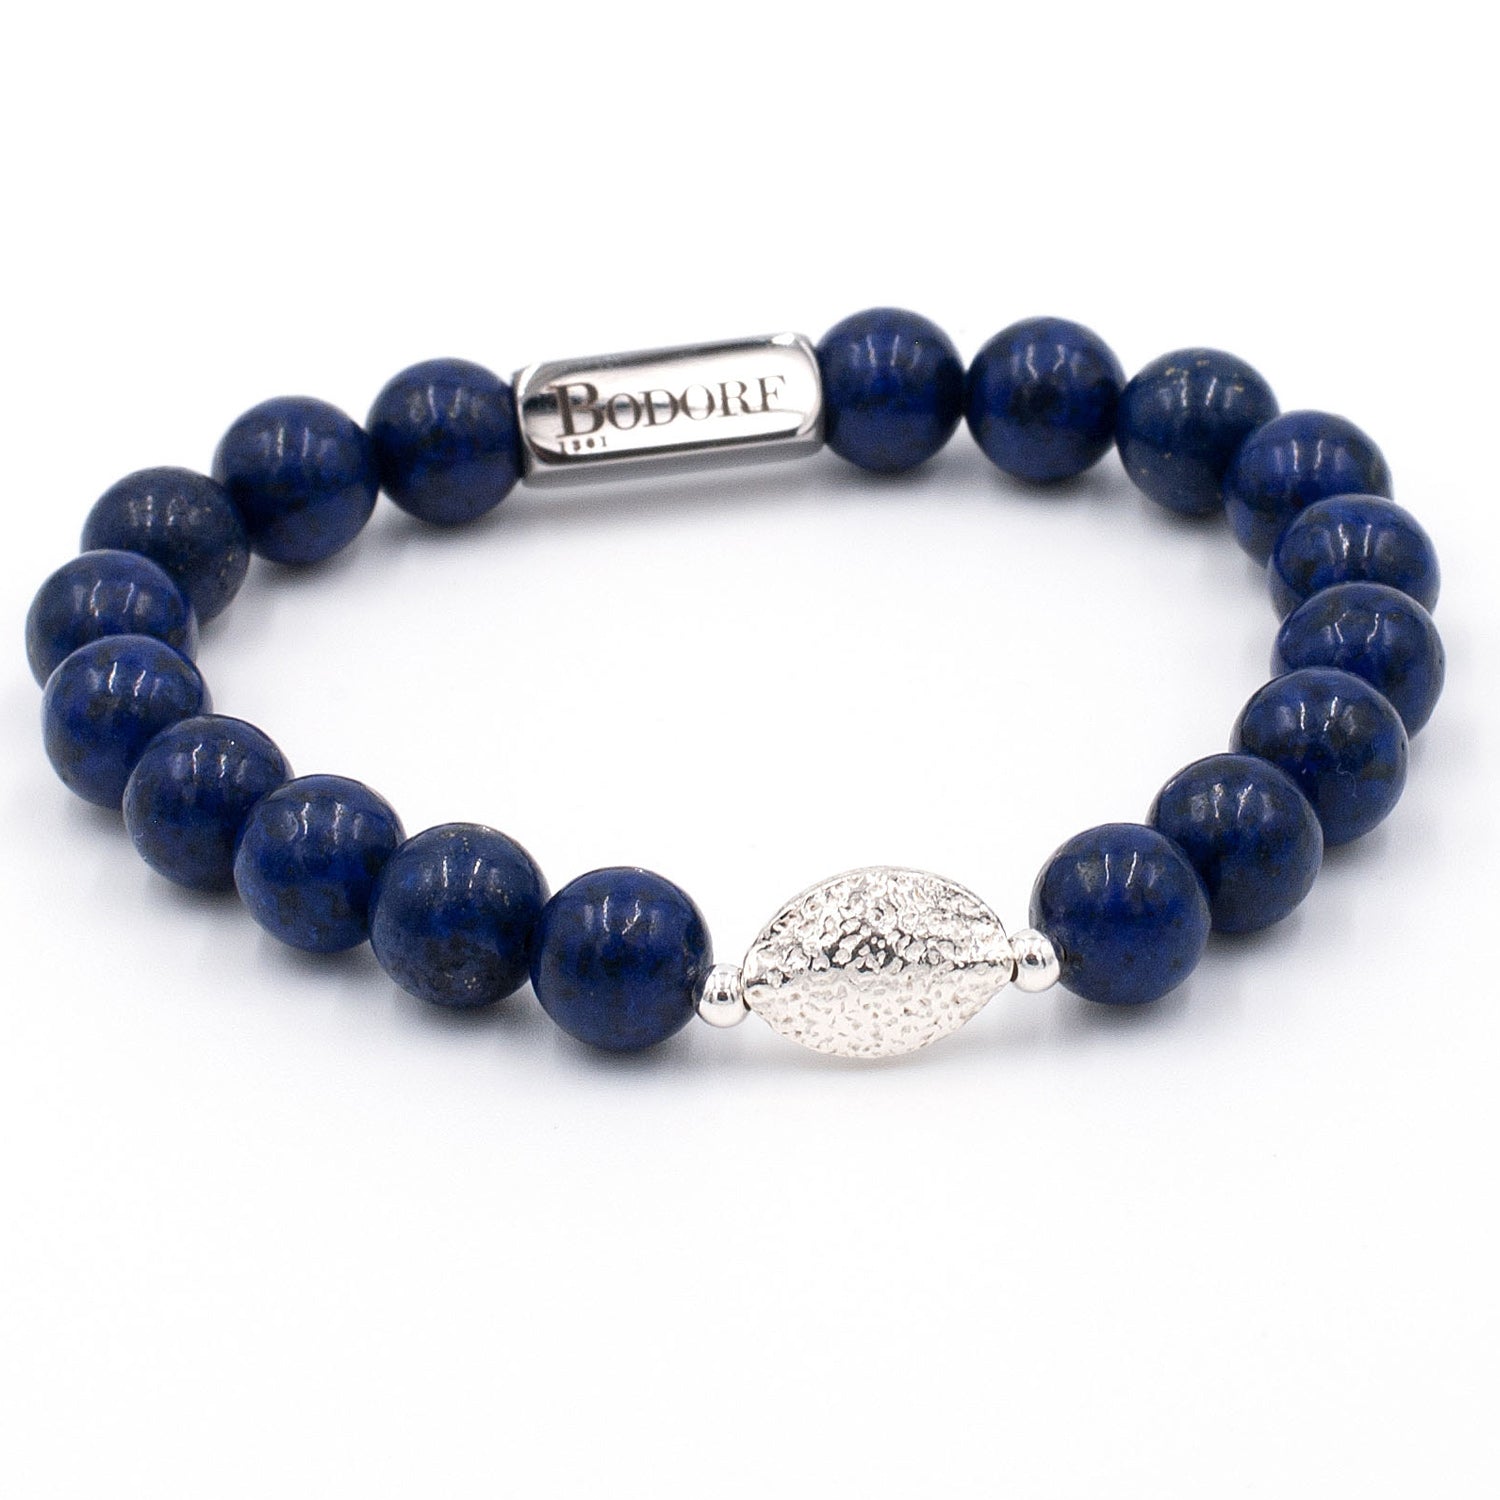 Bodorf armband van donkerblauwe (bijgekleurde) lapis lazuli met een zilveren gehamerde Hill Tribe Bead